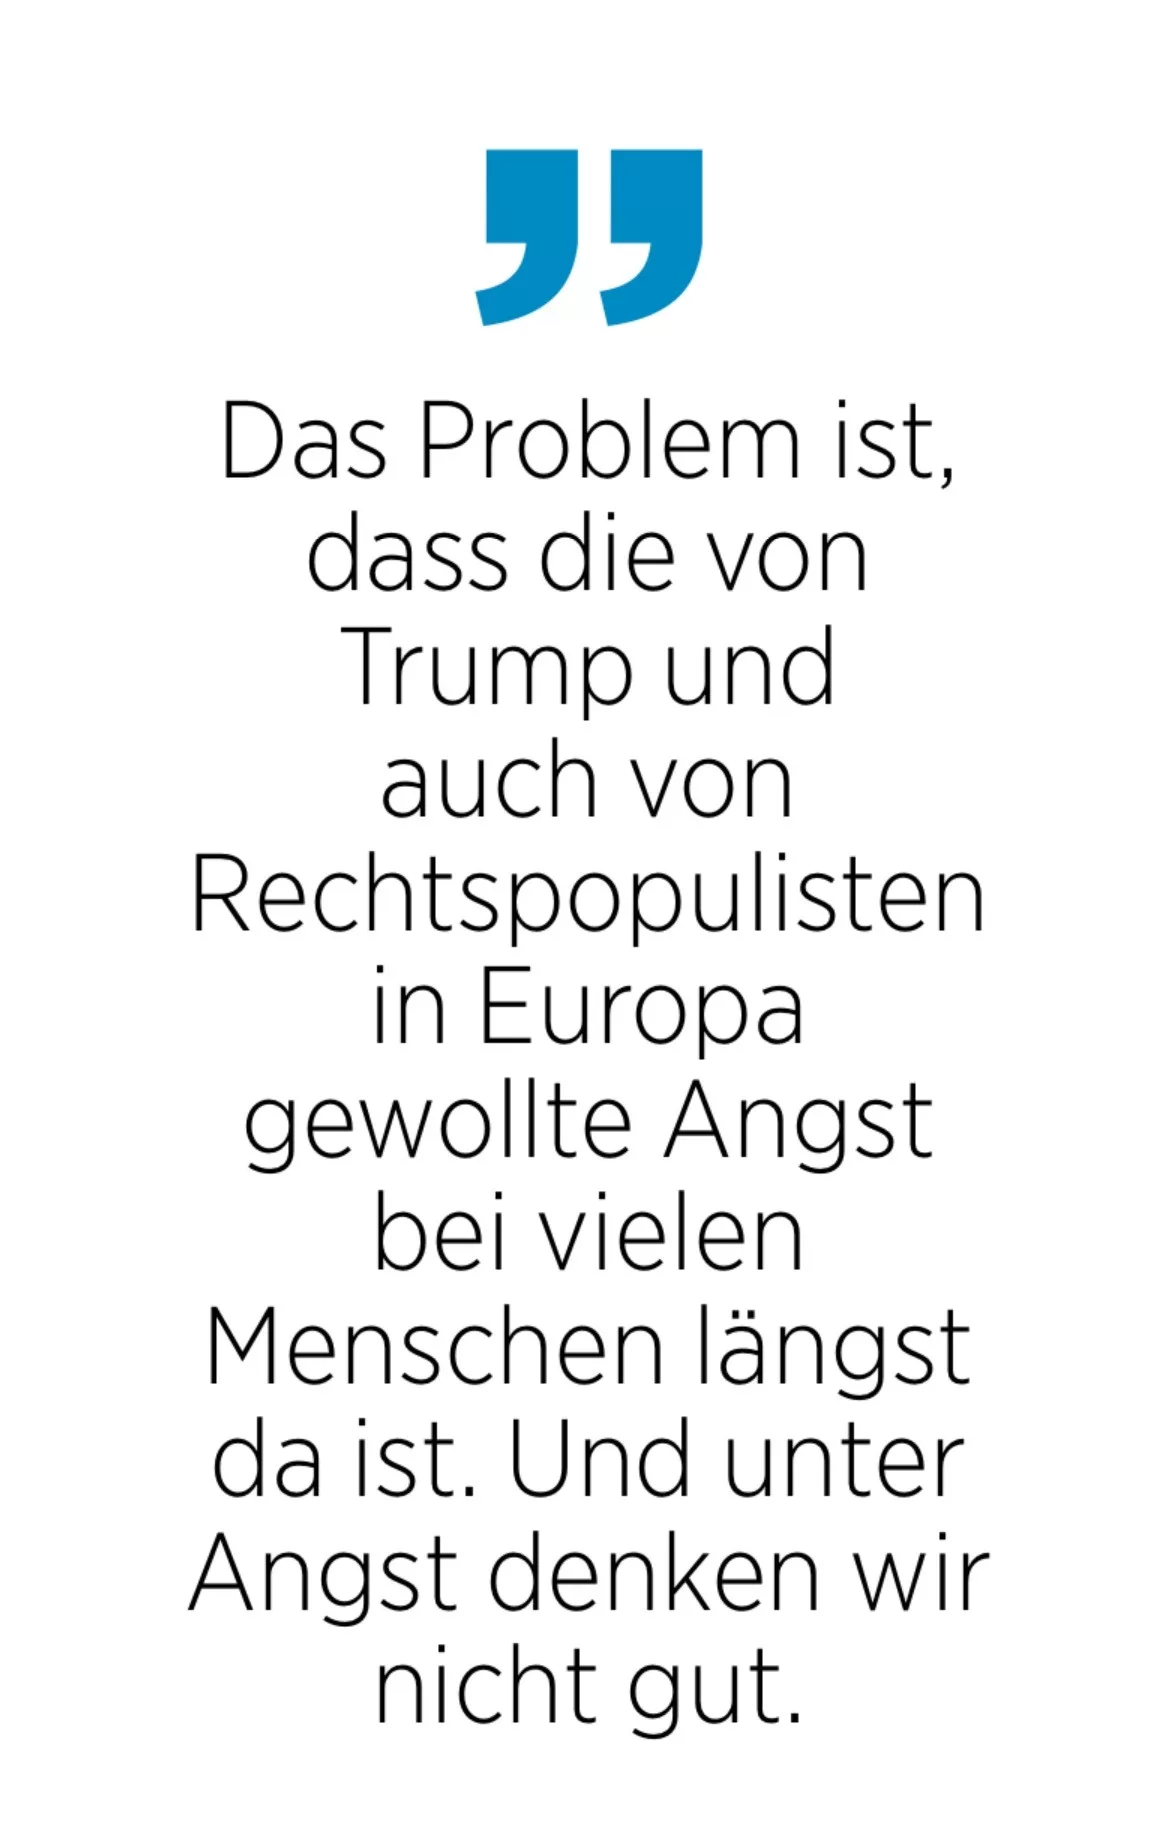 Das Problem ist, dass die von Trump und auch von Rechtspopulisten in Europa gewollte Angst bei vielen Menschen längst da ist. Und unter Angst denken wir nicht gut.